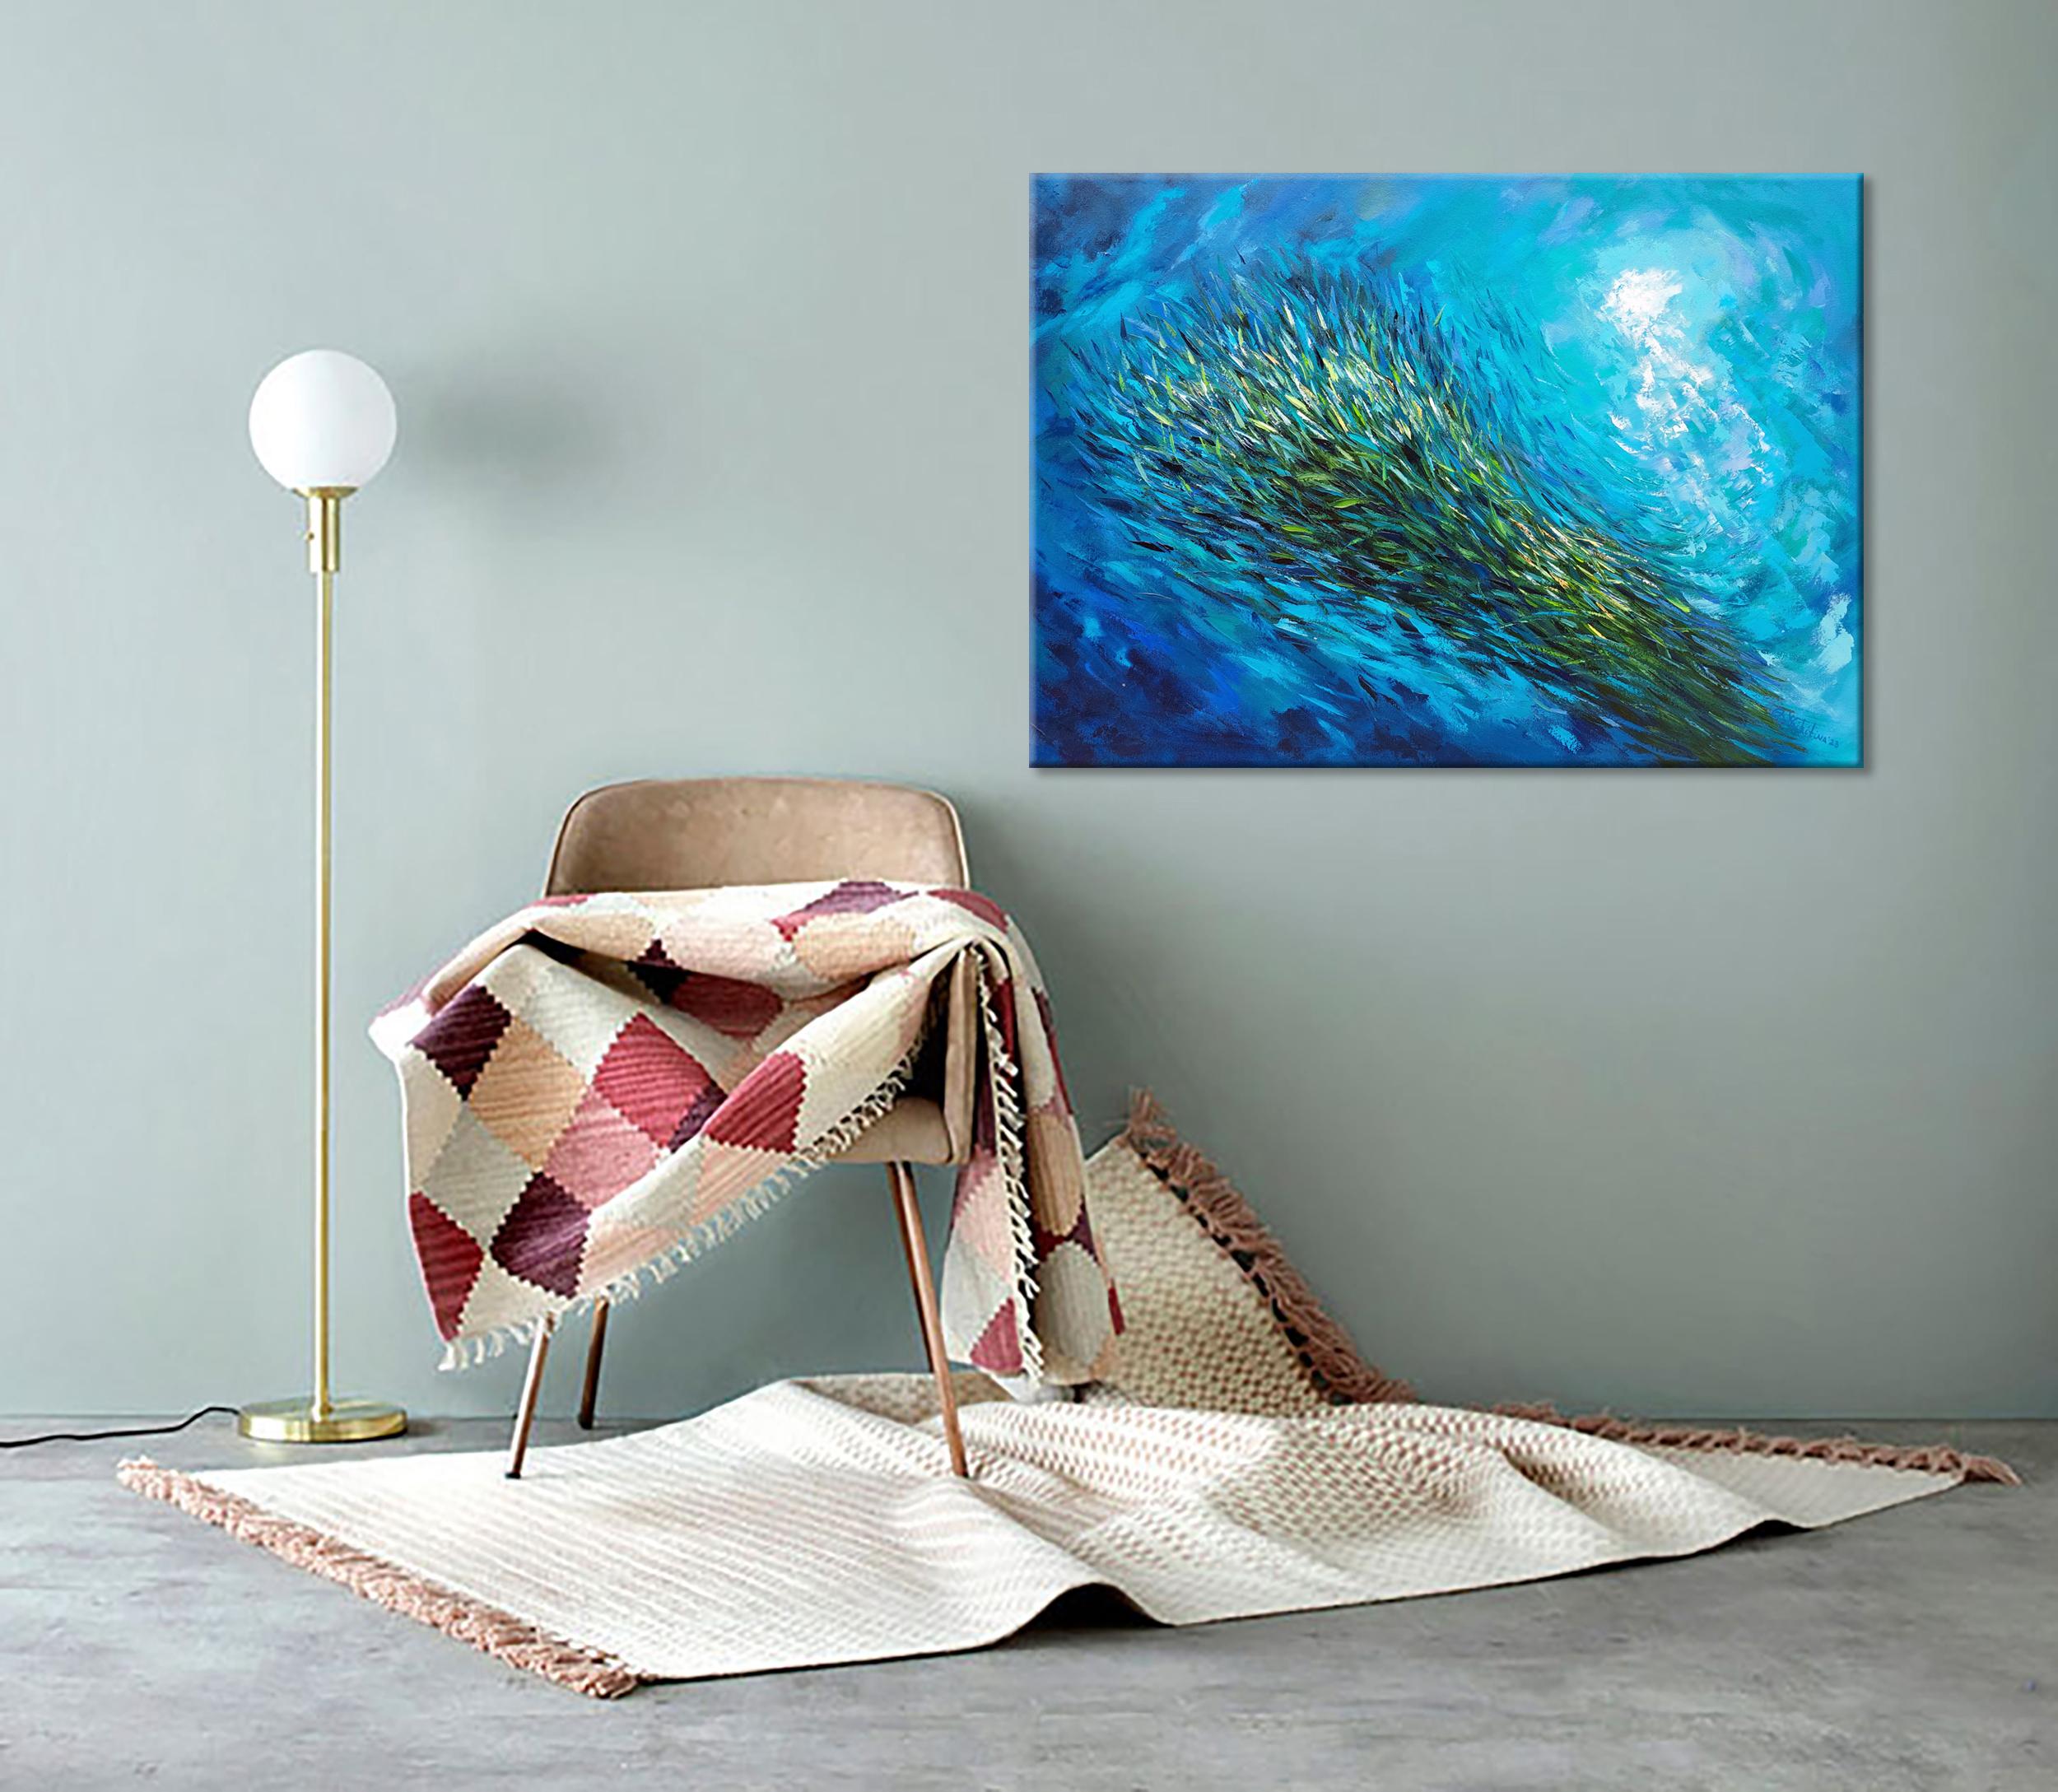 School of Fish Sardines Stream - Painting by Olga Nikitina